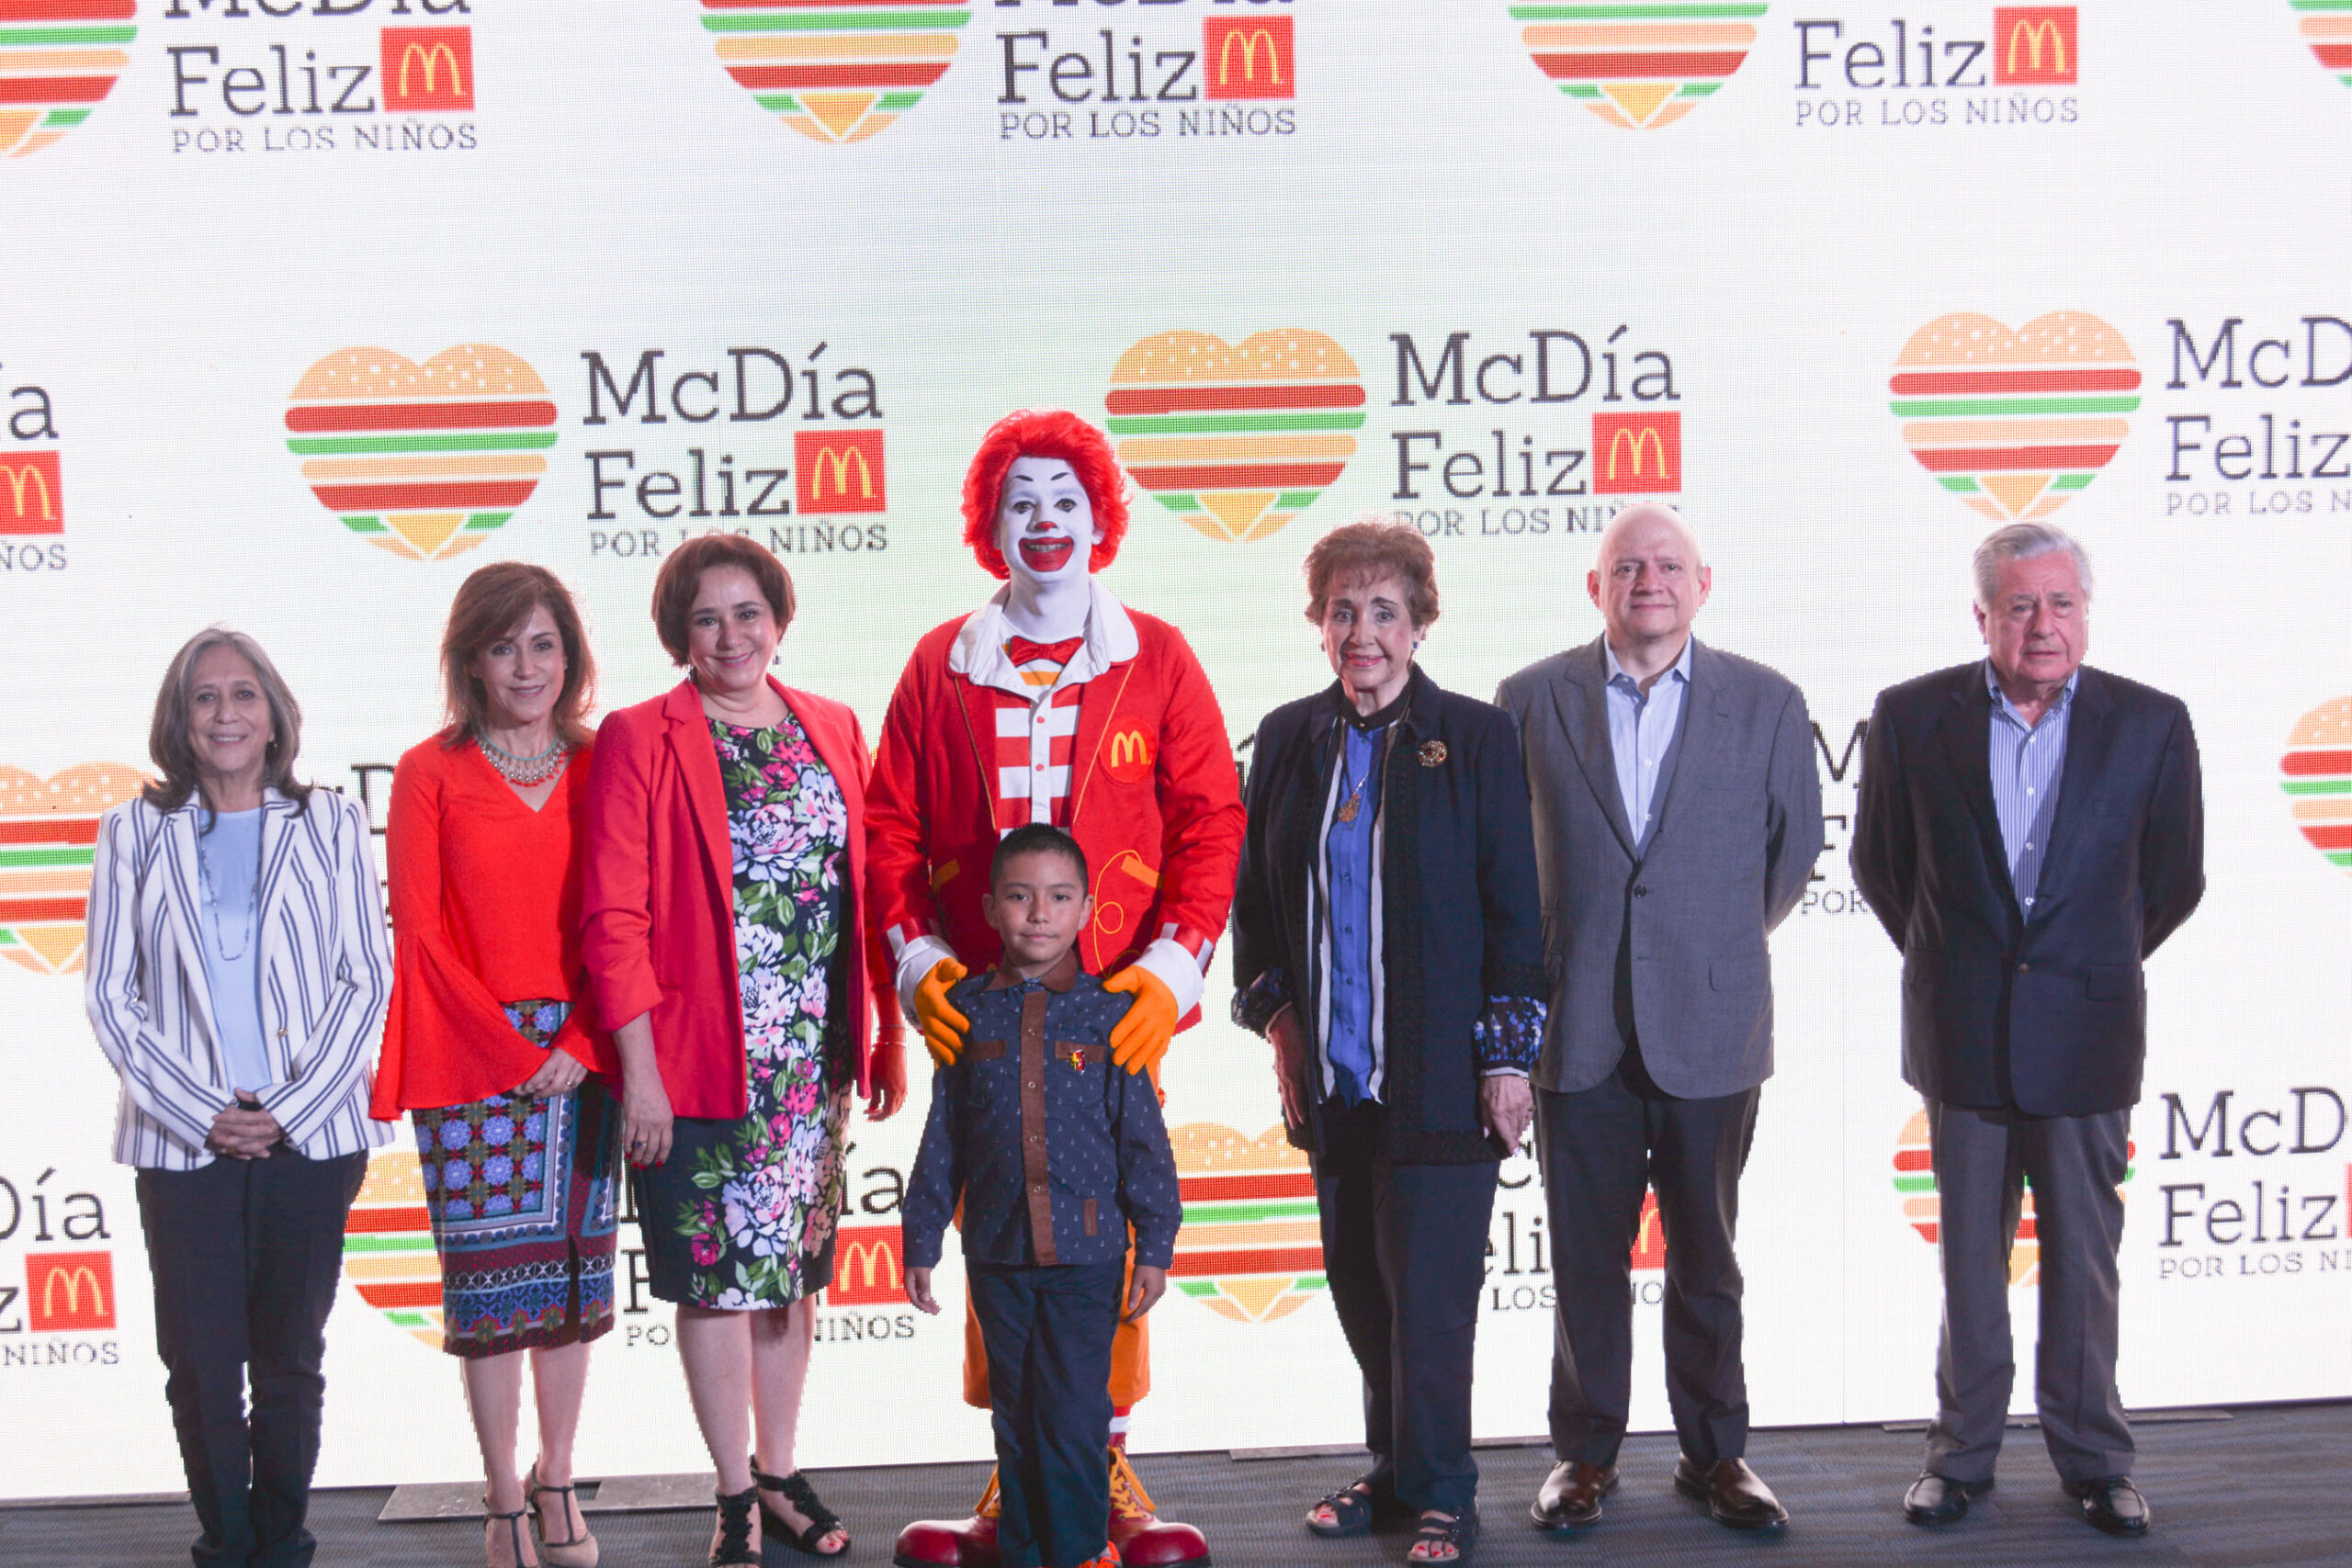 McDonald’s anuncia el 19º McDía Feliz